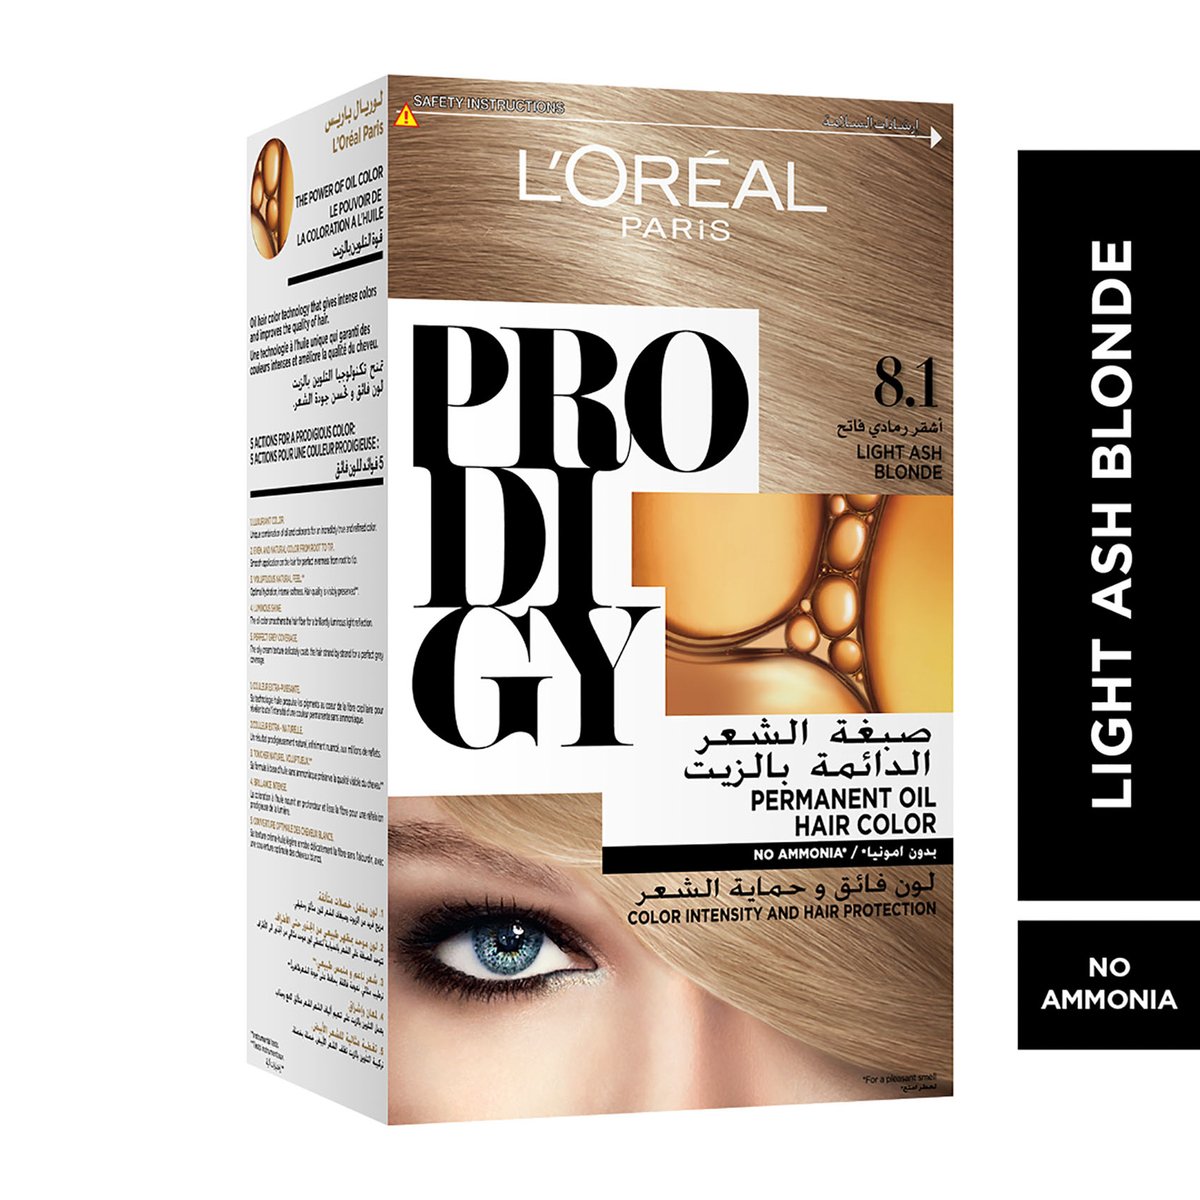 L'Oreal Paris Prodigy Hair Color 8.1 Diamond Light Ash Blonde 1 pkt